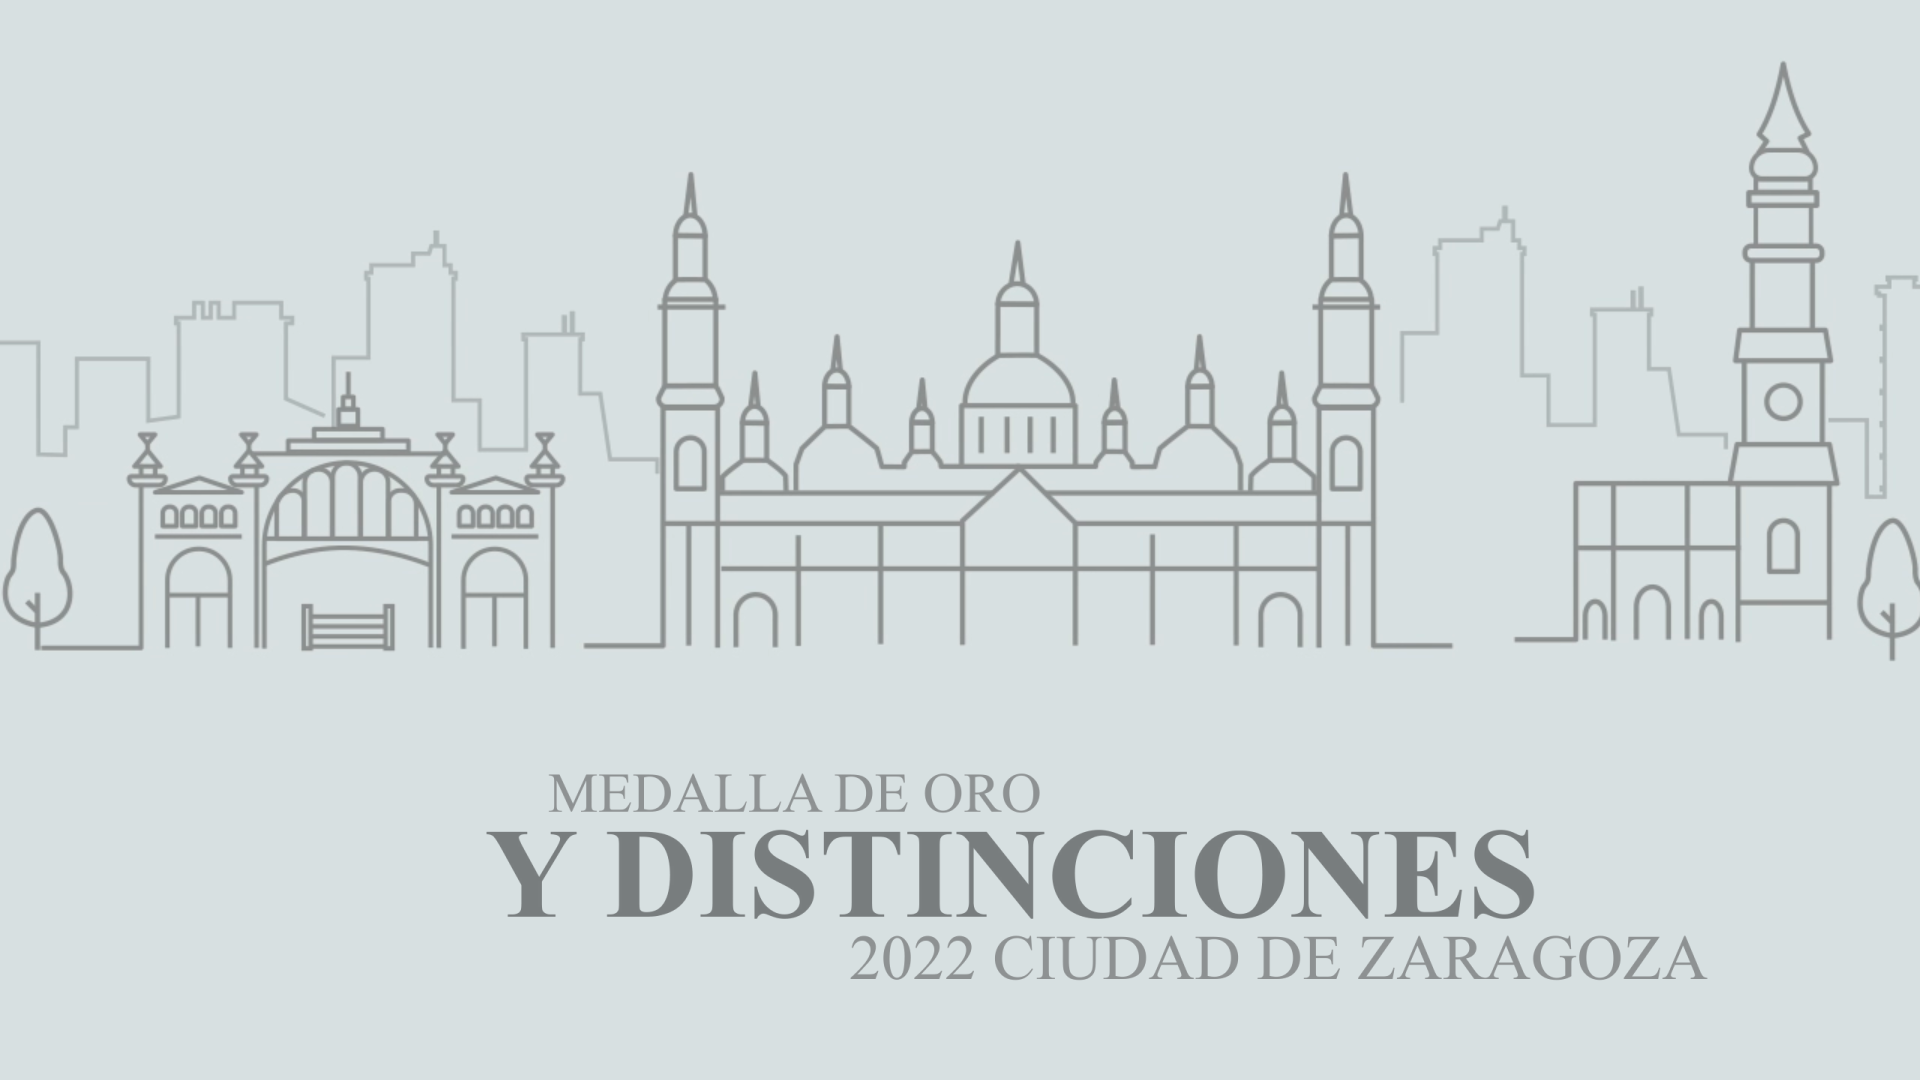 Medalla de oro y distinciones 2022. Ciudad de Zaragoza